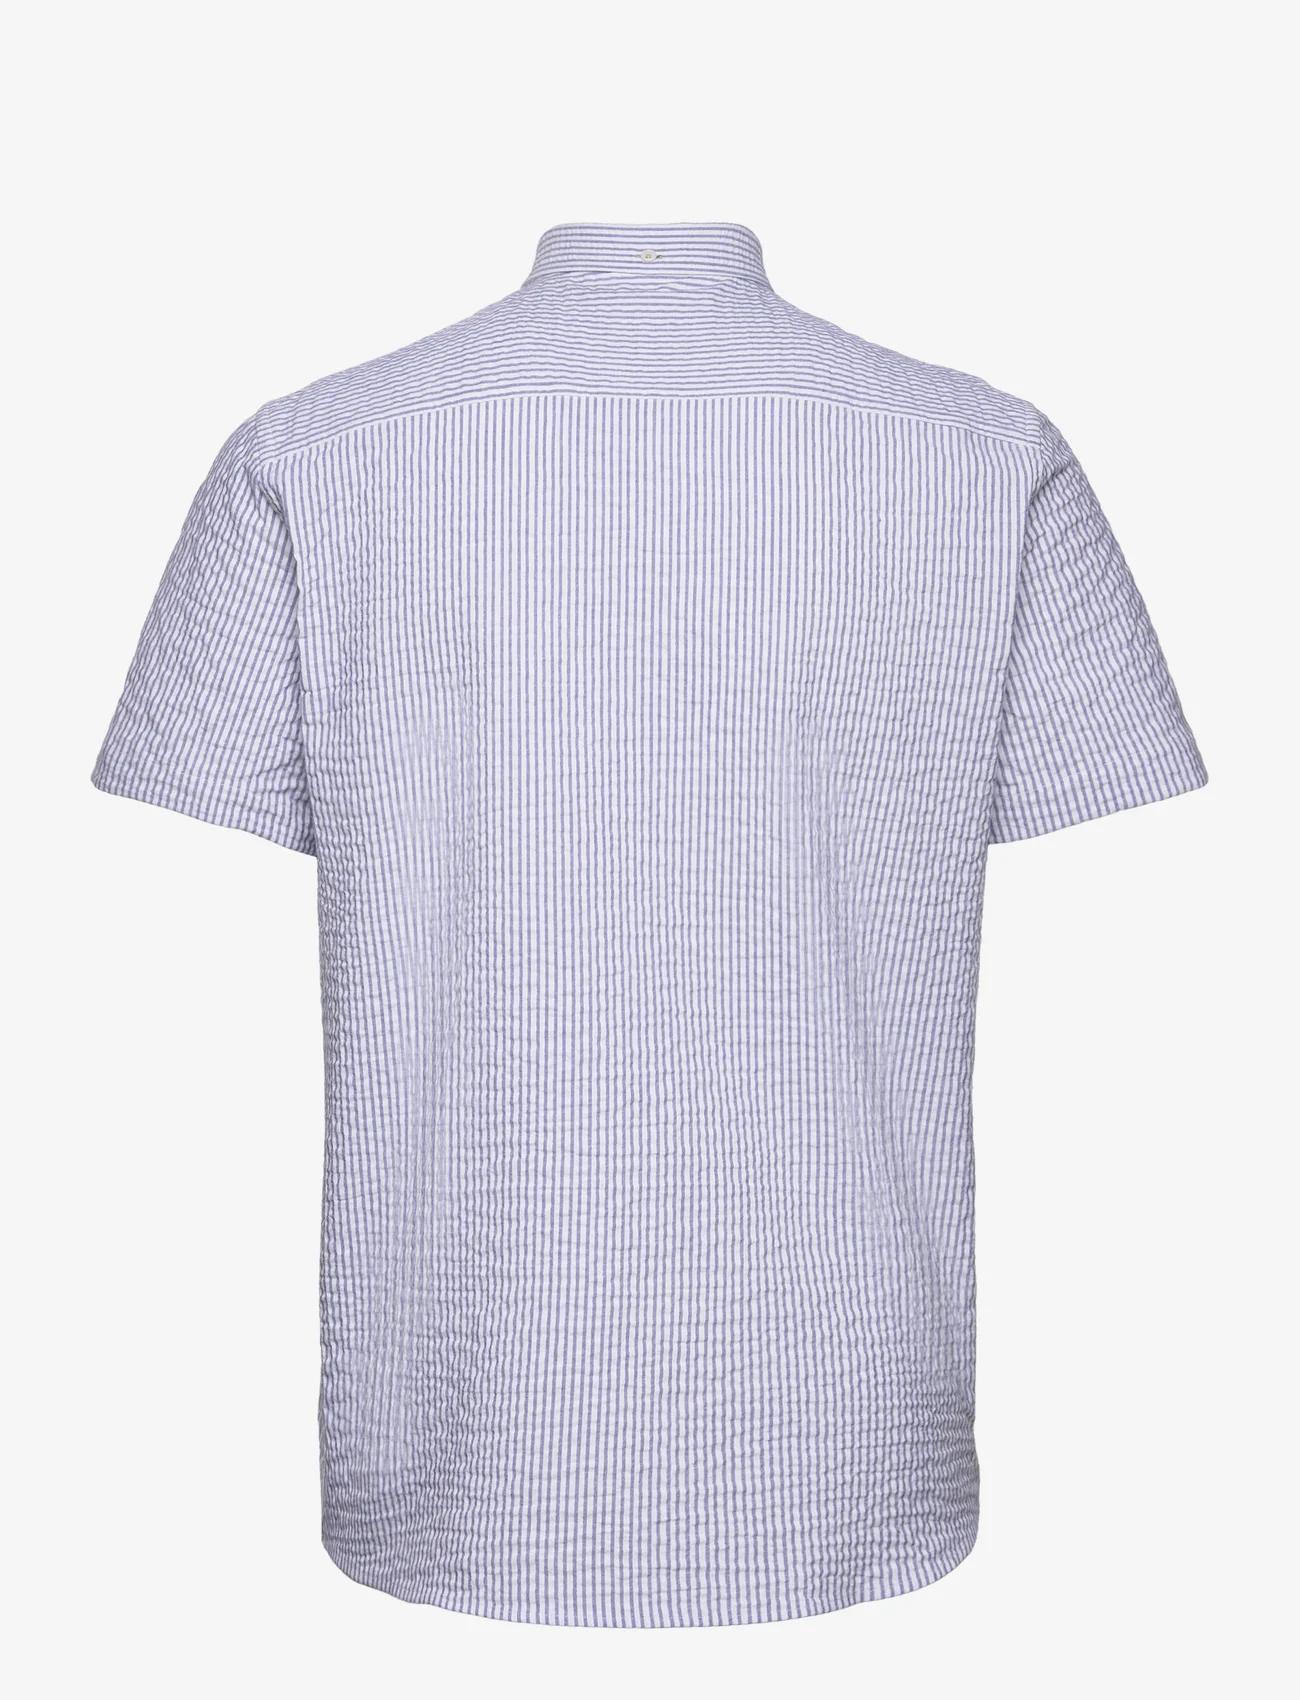 Kronstadt - Johan seersucker S/S shirt - laisvalaikio marškiniai - navy/white - 1